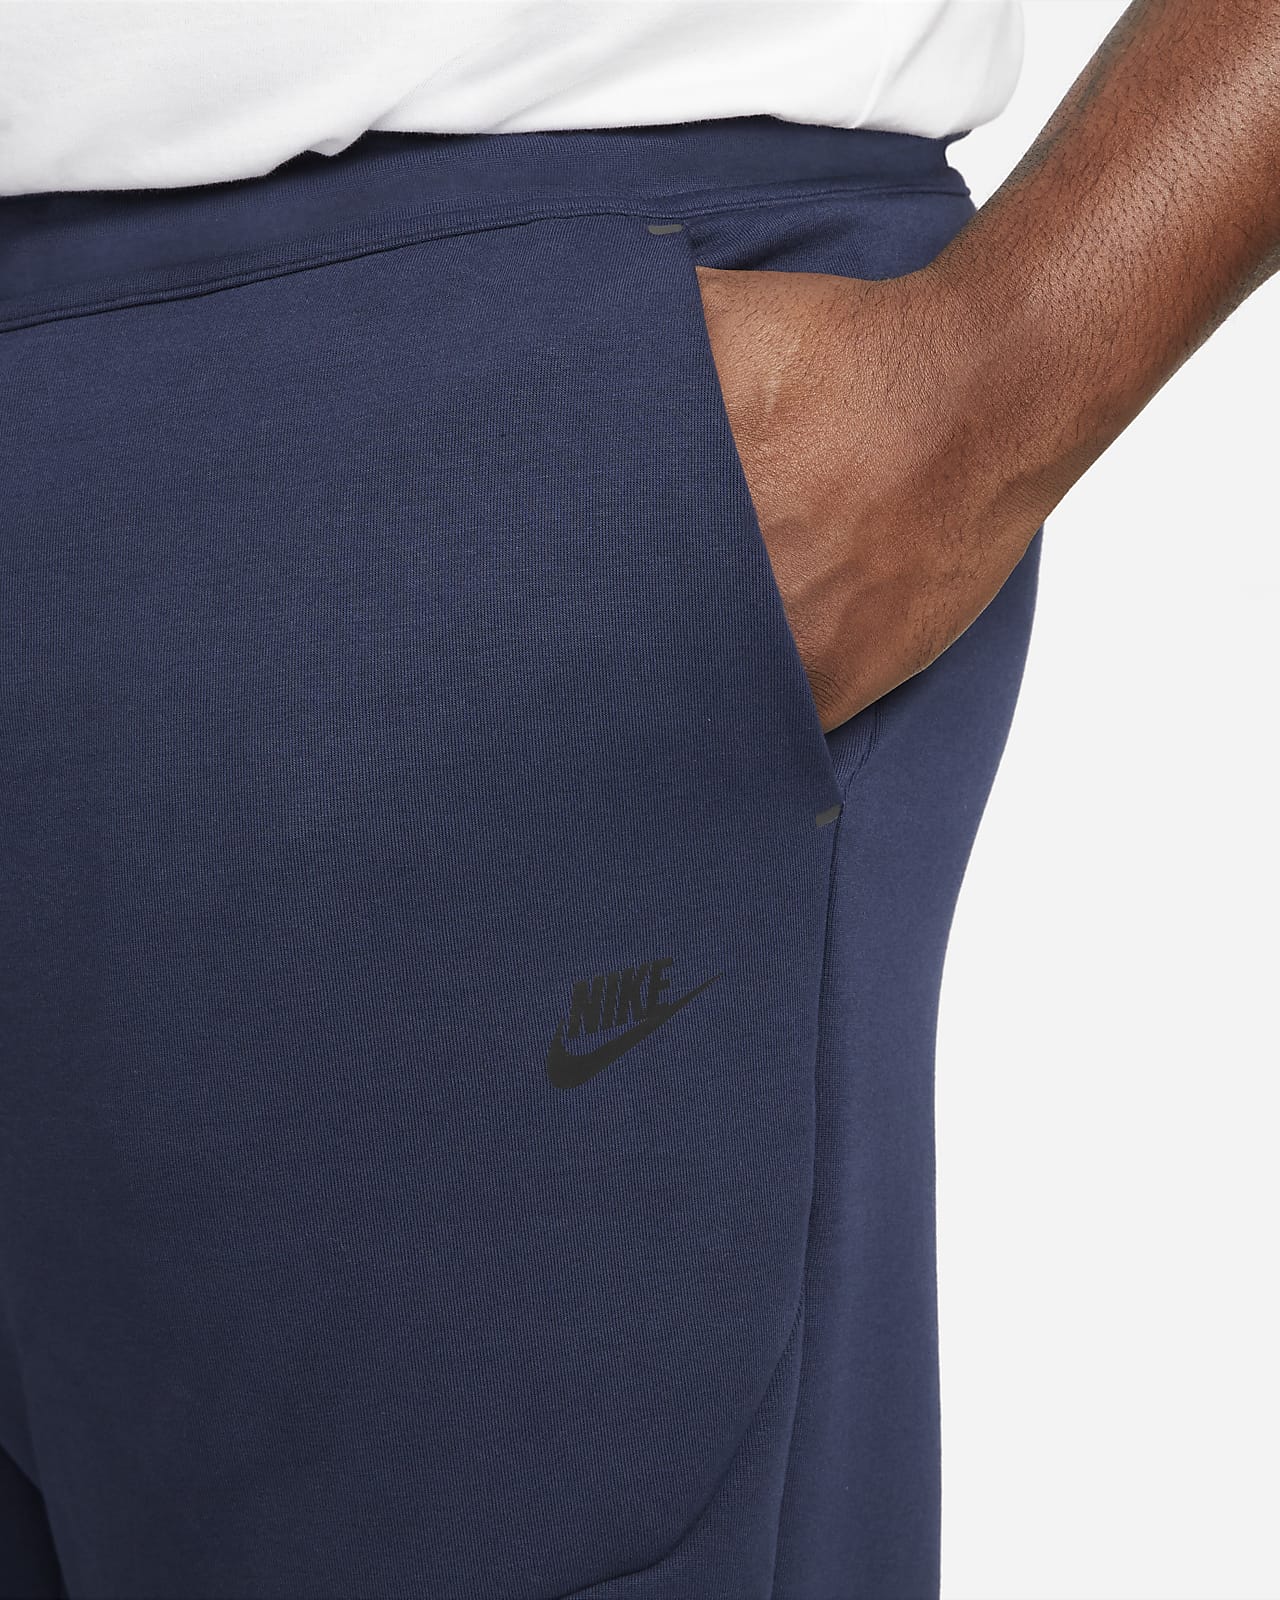 Nike Sportswear Tech Fleece Joggers CU4495-016 – Kick Theory